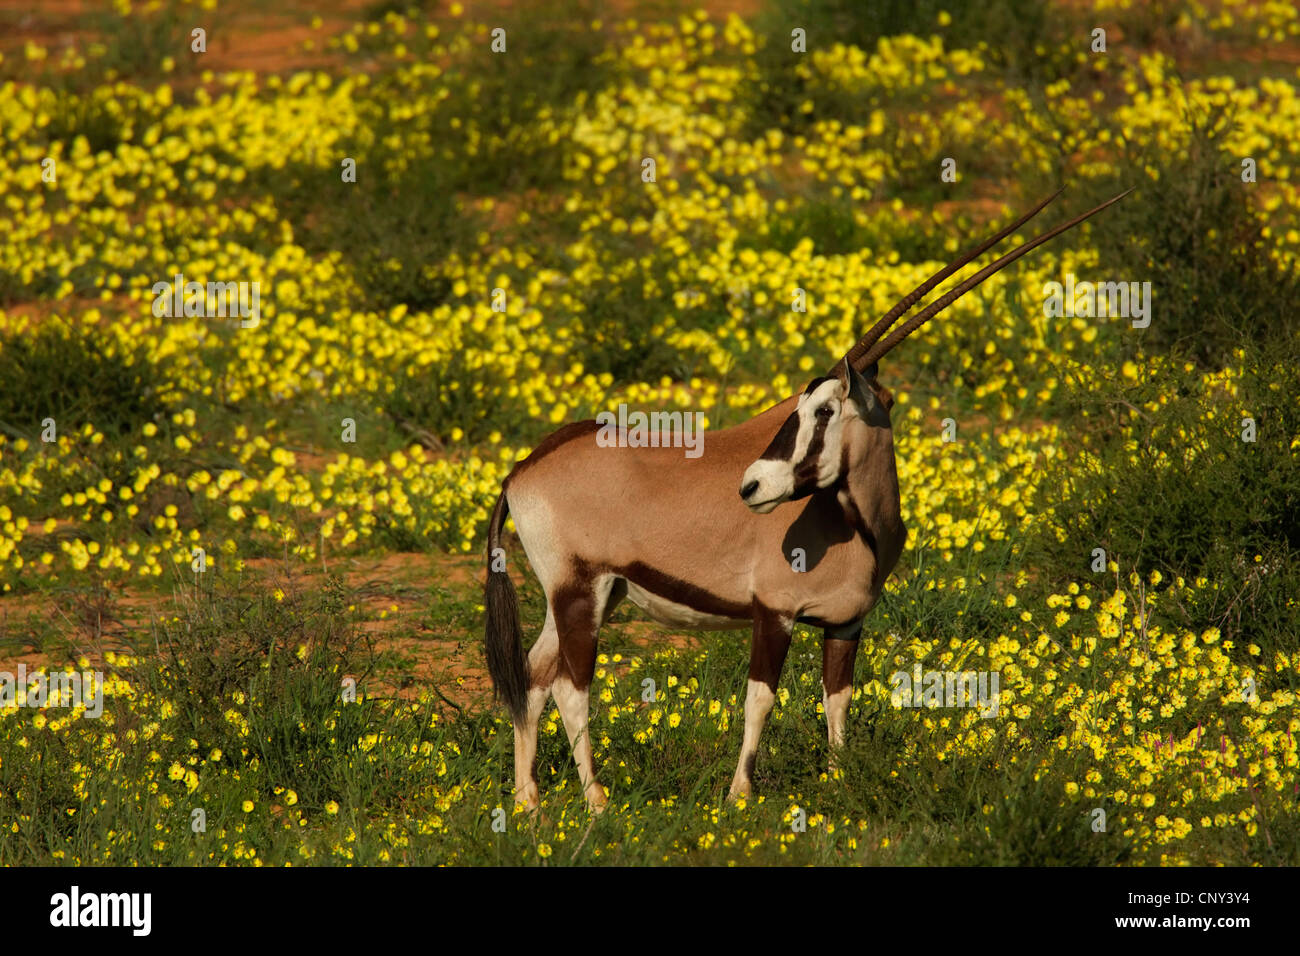 Orynx Beisa, gemsbok (Oryx de beisa Oryx gazella beisa,), debout dans la savane jaune parmi les fleurs, Afrique du Sud, Northern Cape, Kgalagadi Transfrontier Park Banque D'Images